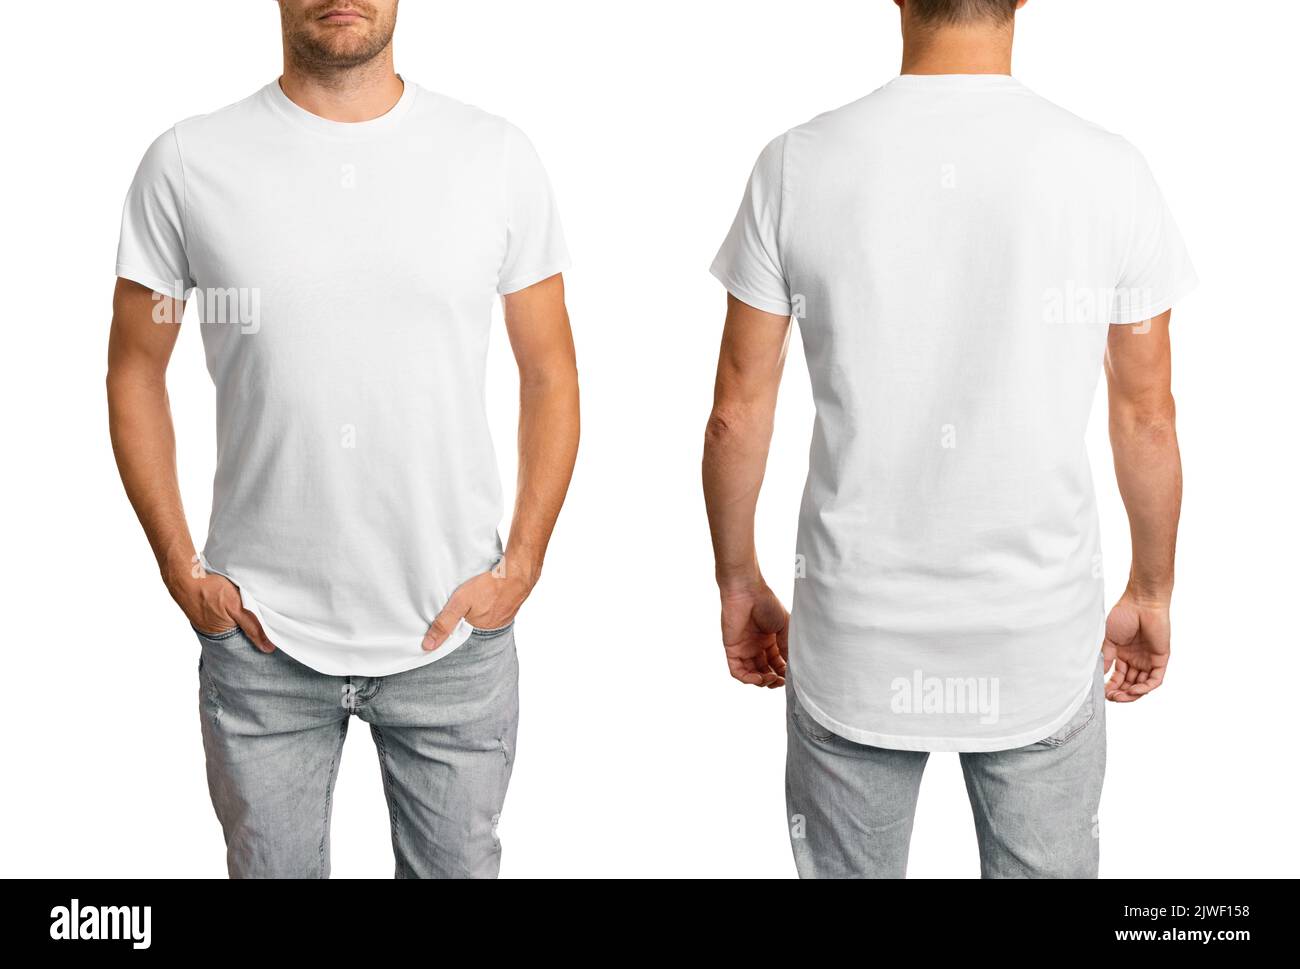 hombre en camiseta blanca. plantilla de maqueta delantera y trasera para el diseño. aislada sobre fondo blanco Foto de stock